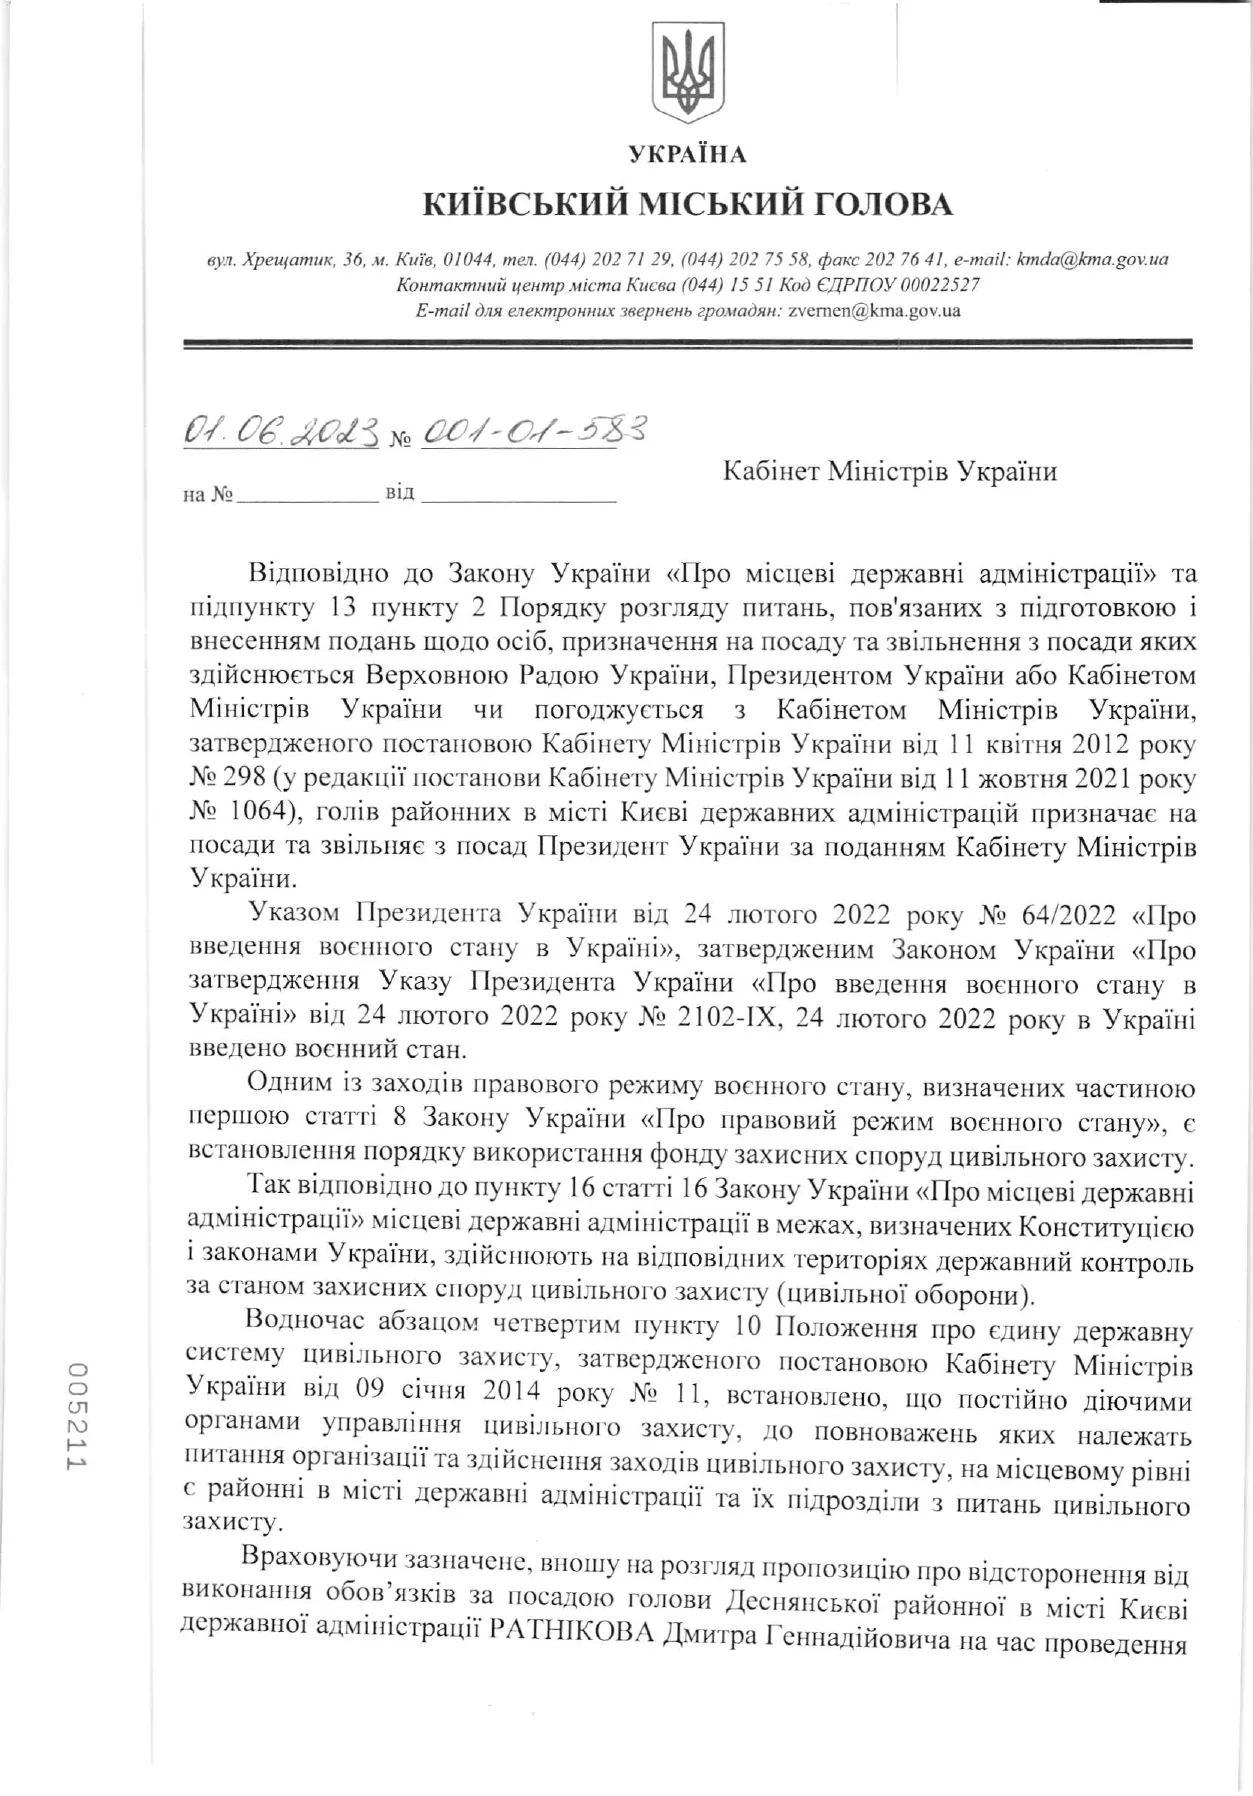 Обращение Виталия Кличко к правительству